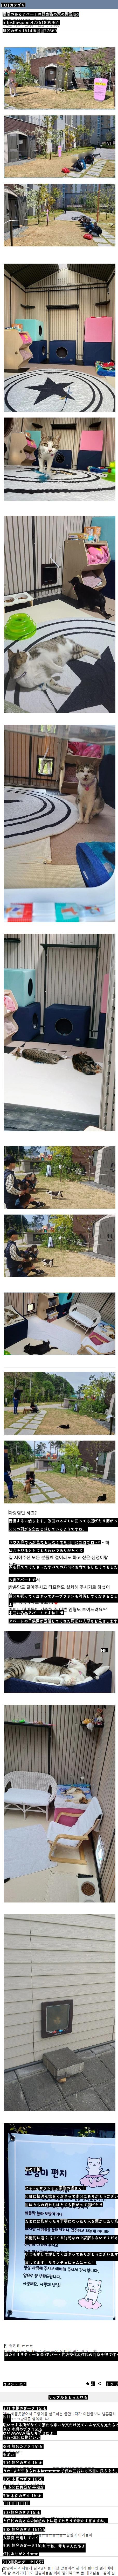 慶尚南道のマンションの野良猫の家の近況.jpg